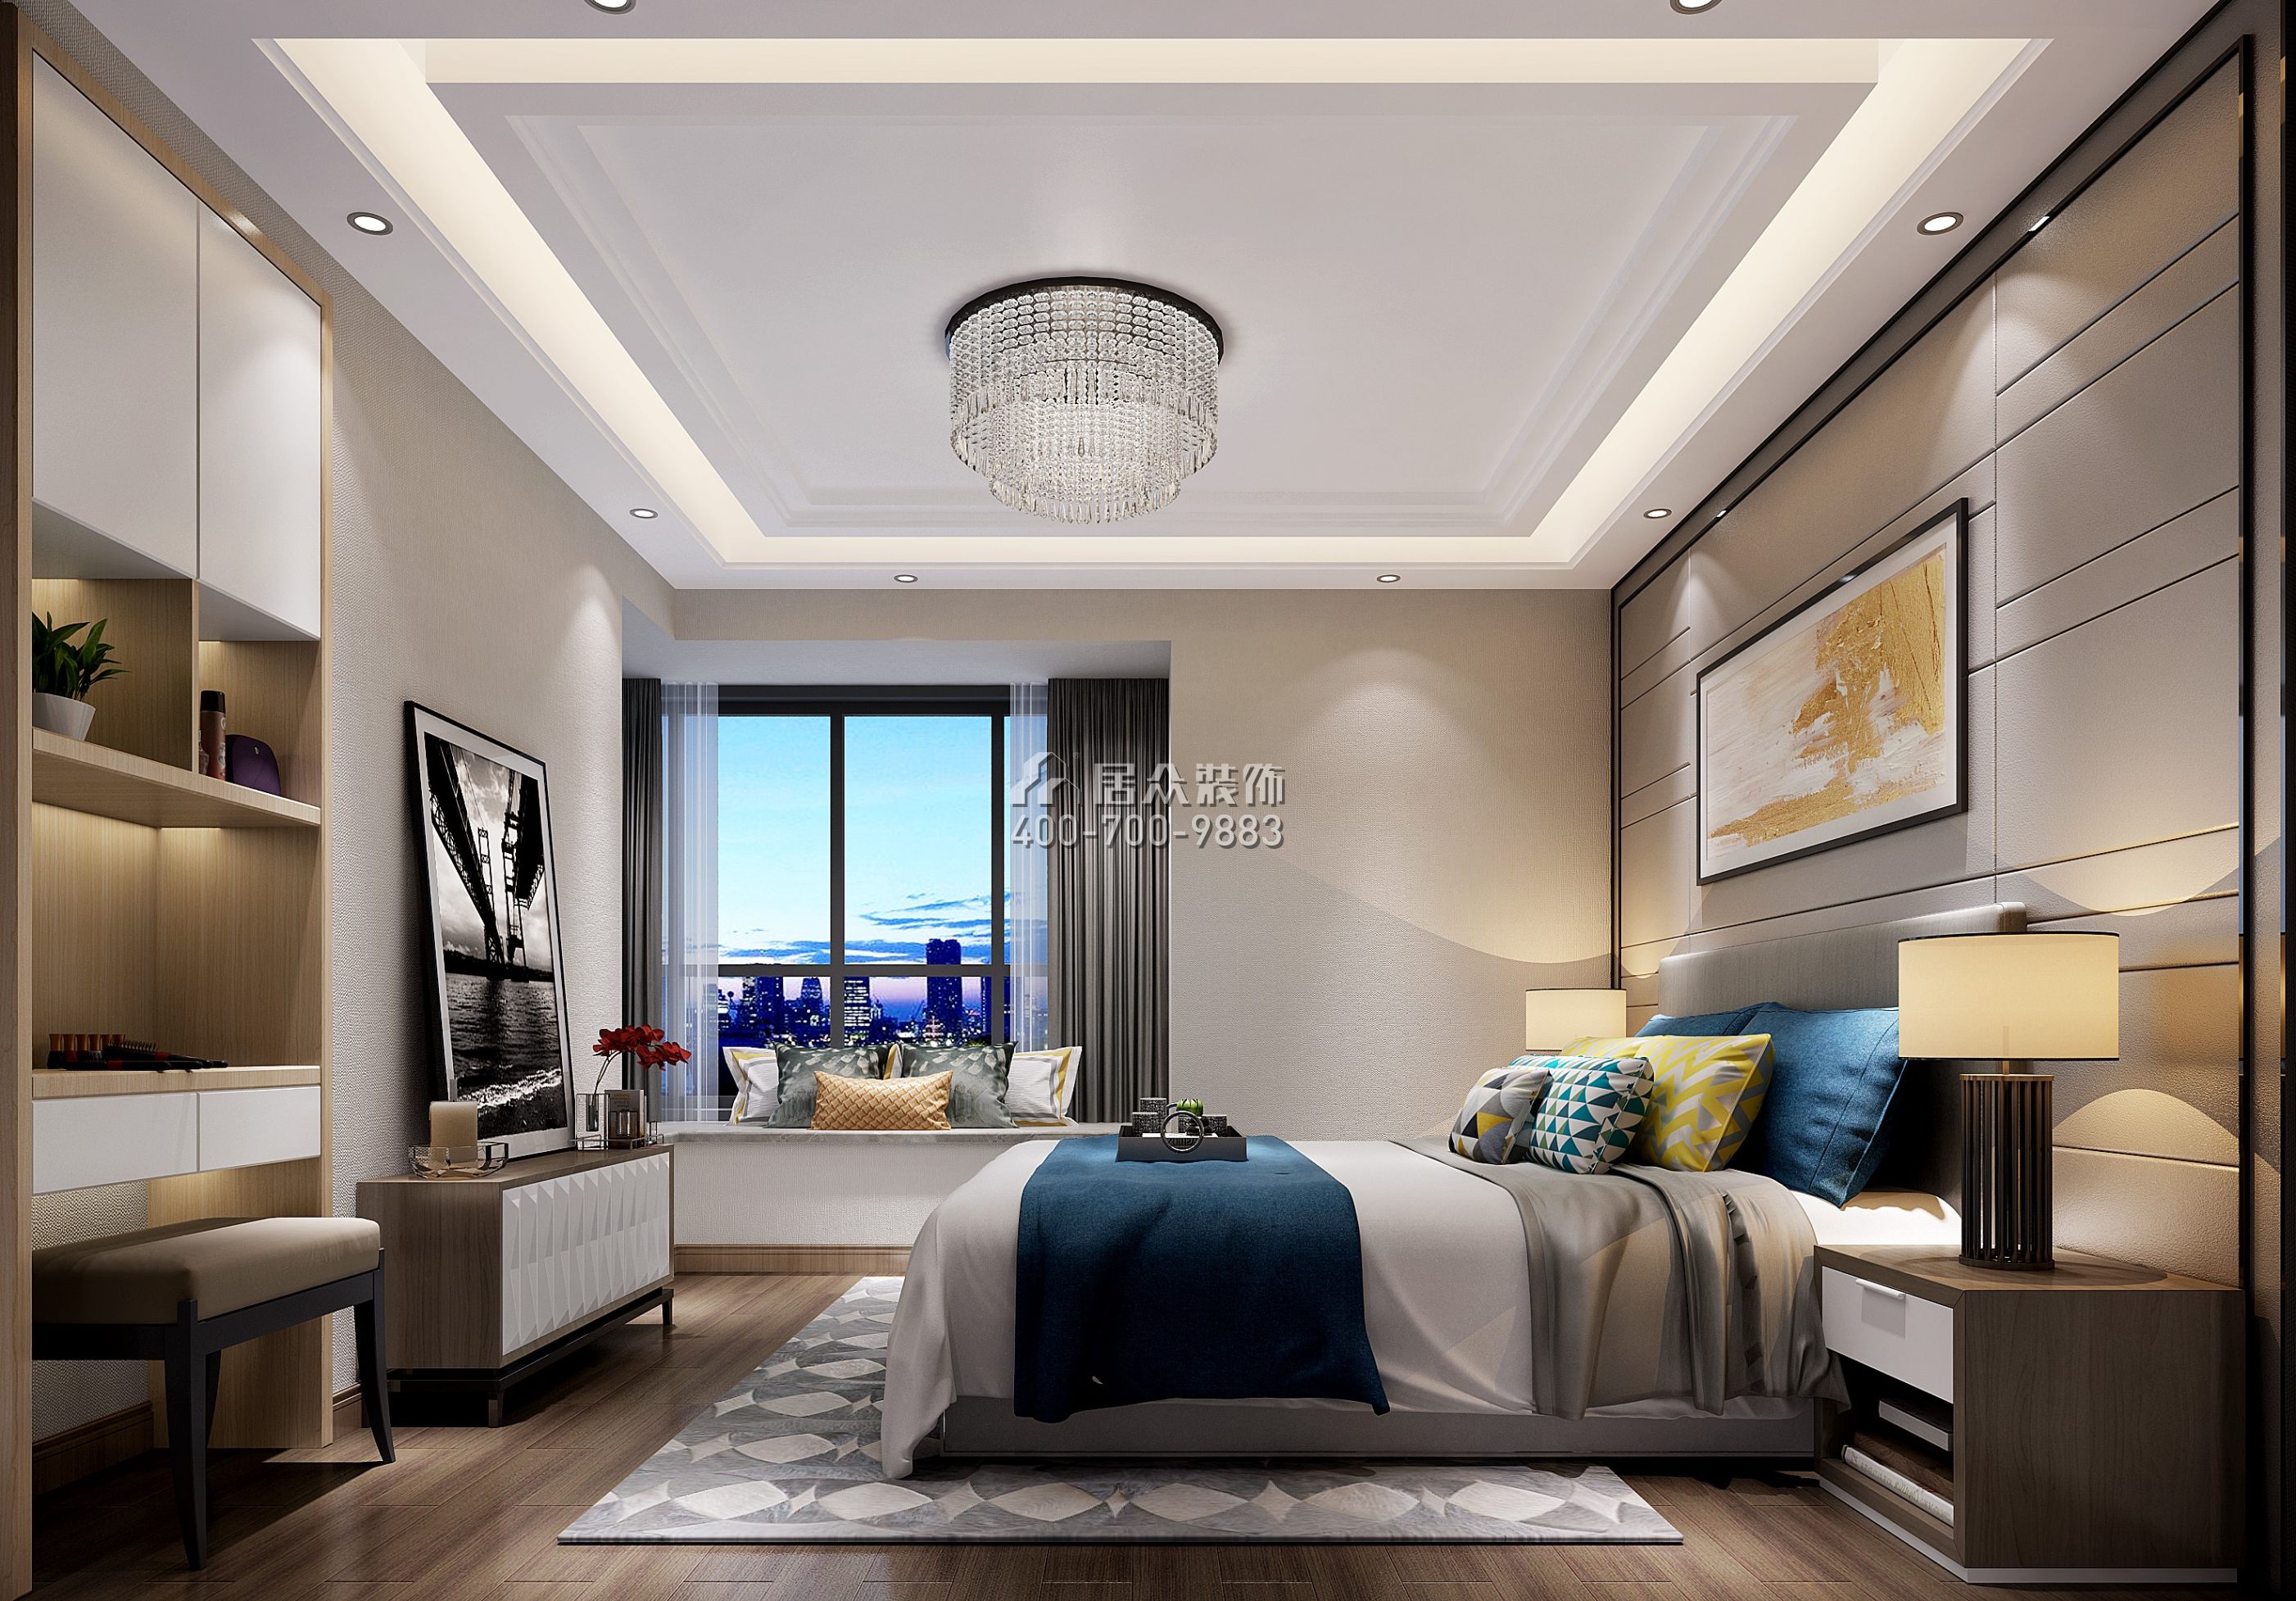 寶生midtown 160平方米現代簡約風格平層戶型臥室裝修效果圖